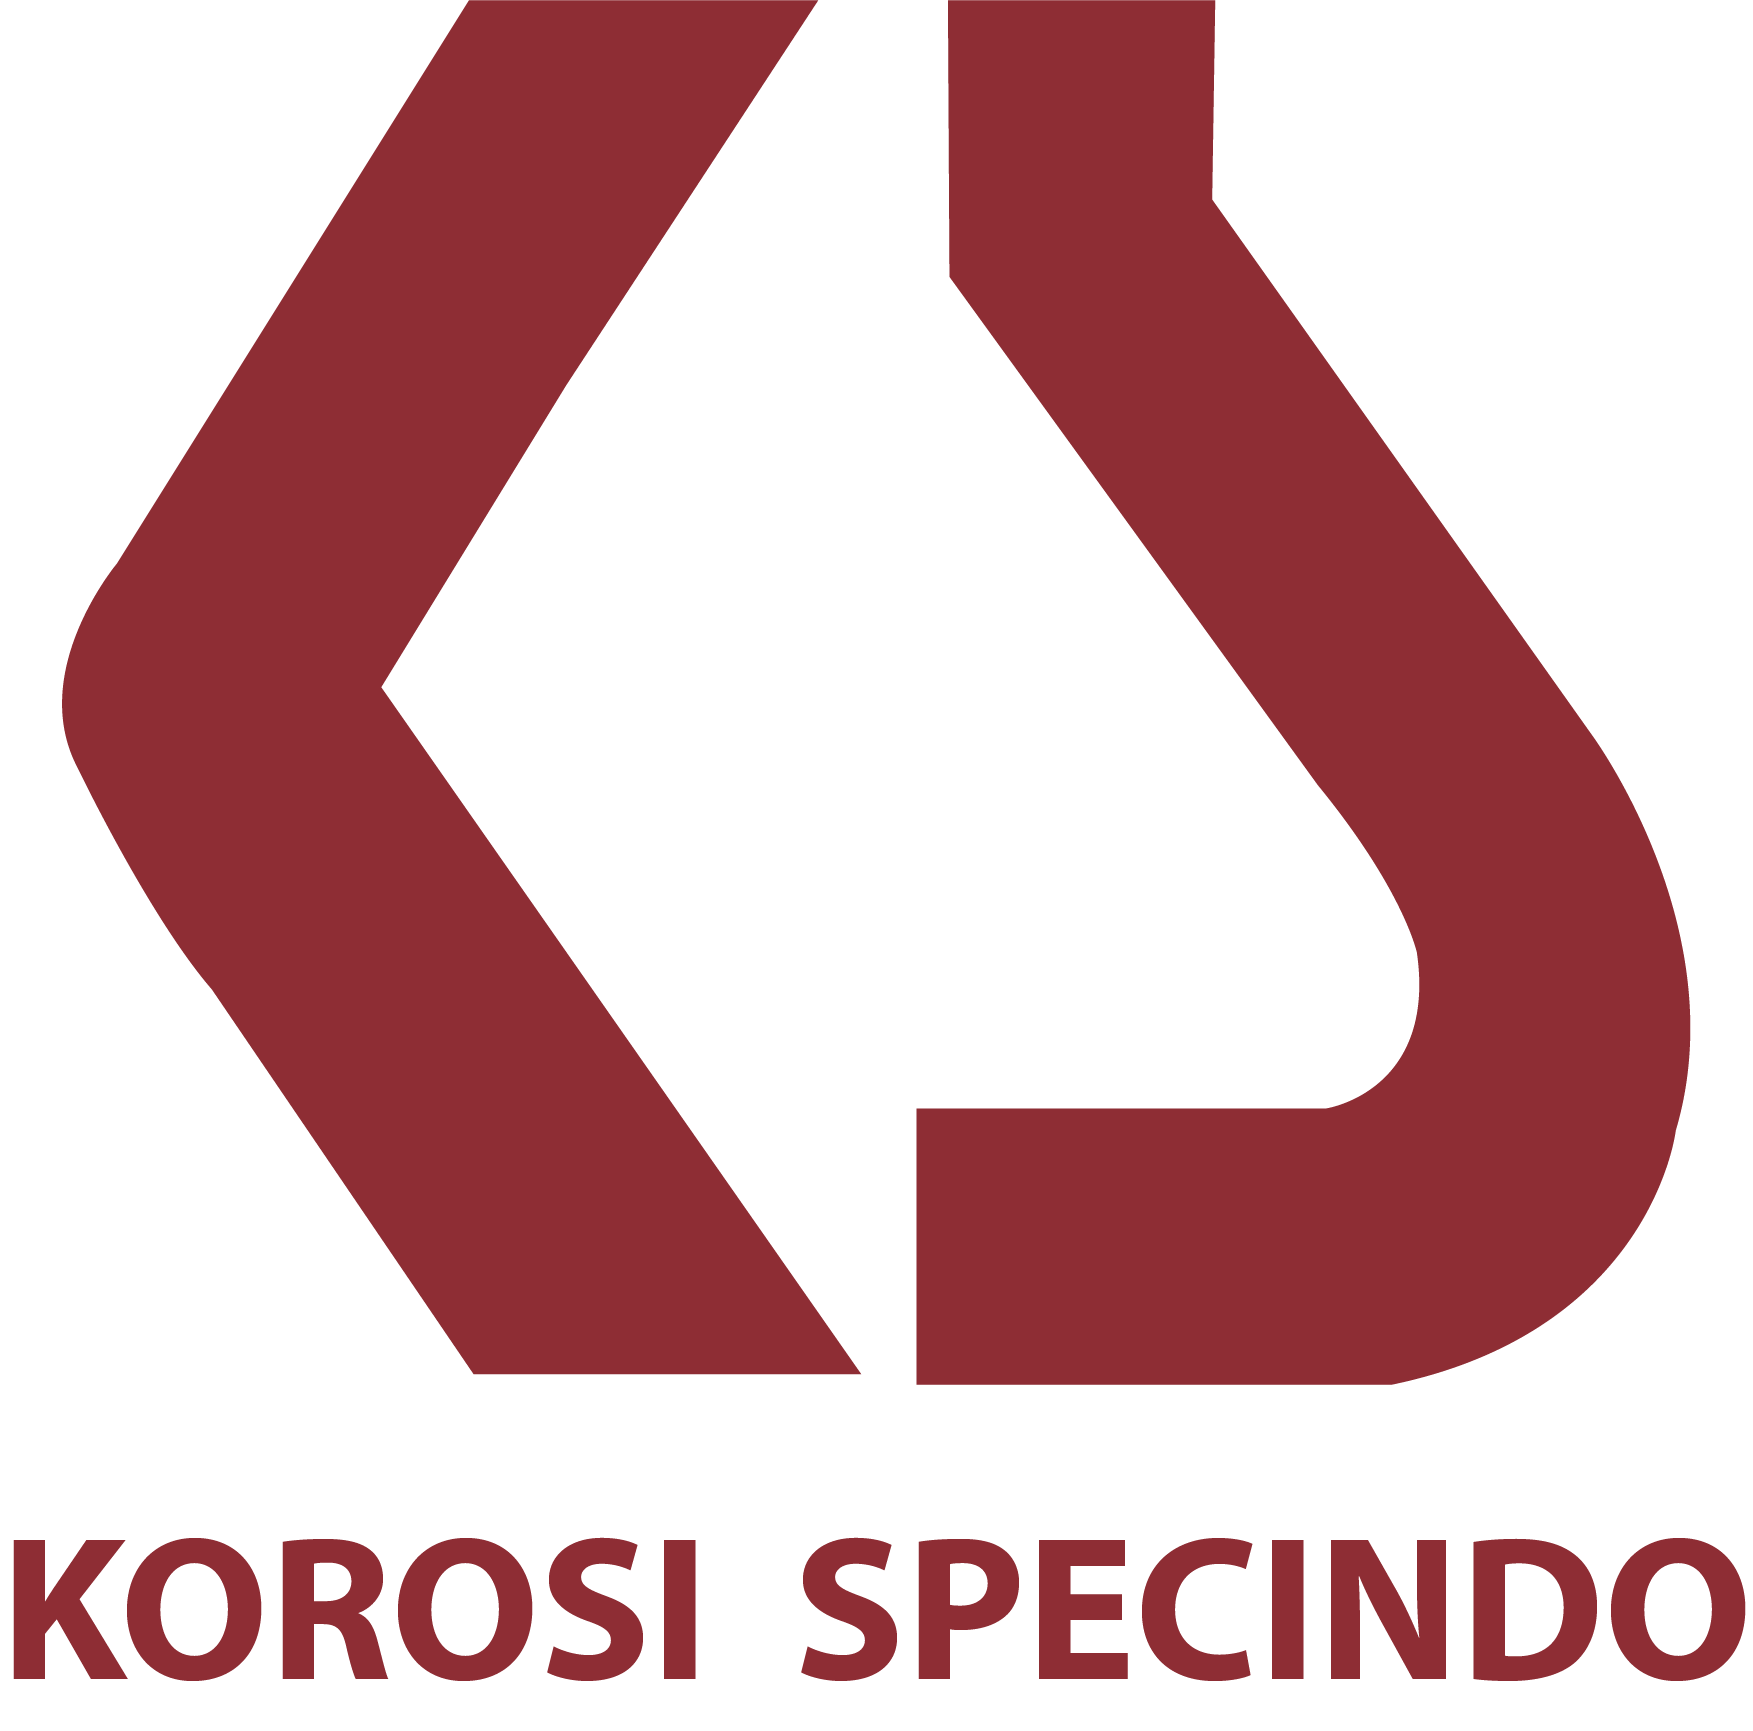 Korosi Specindo's logo